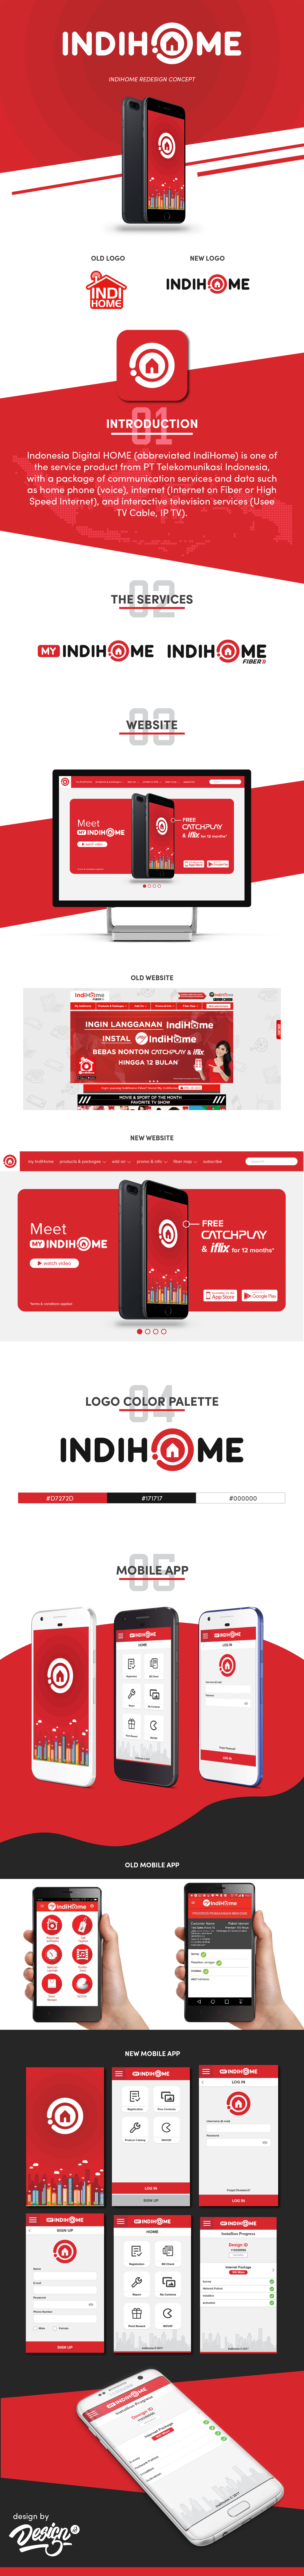 indihome Website logo redesign concept app indonesia branding  ux UI